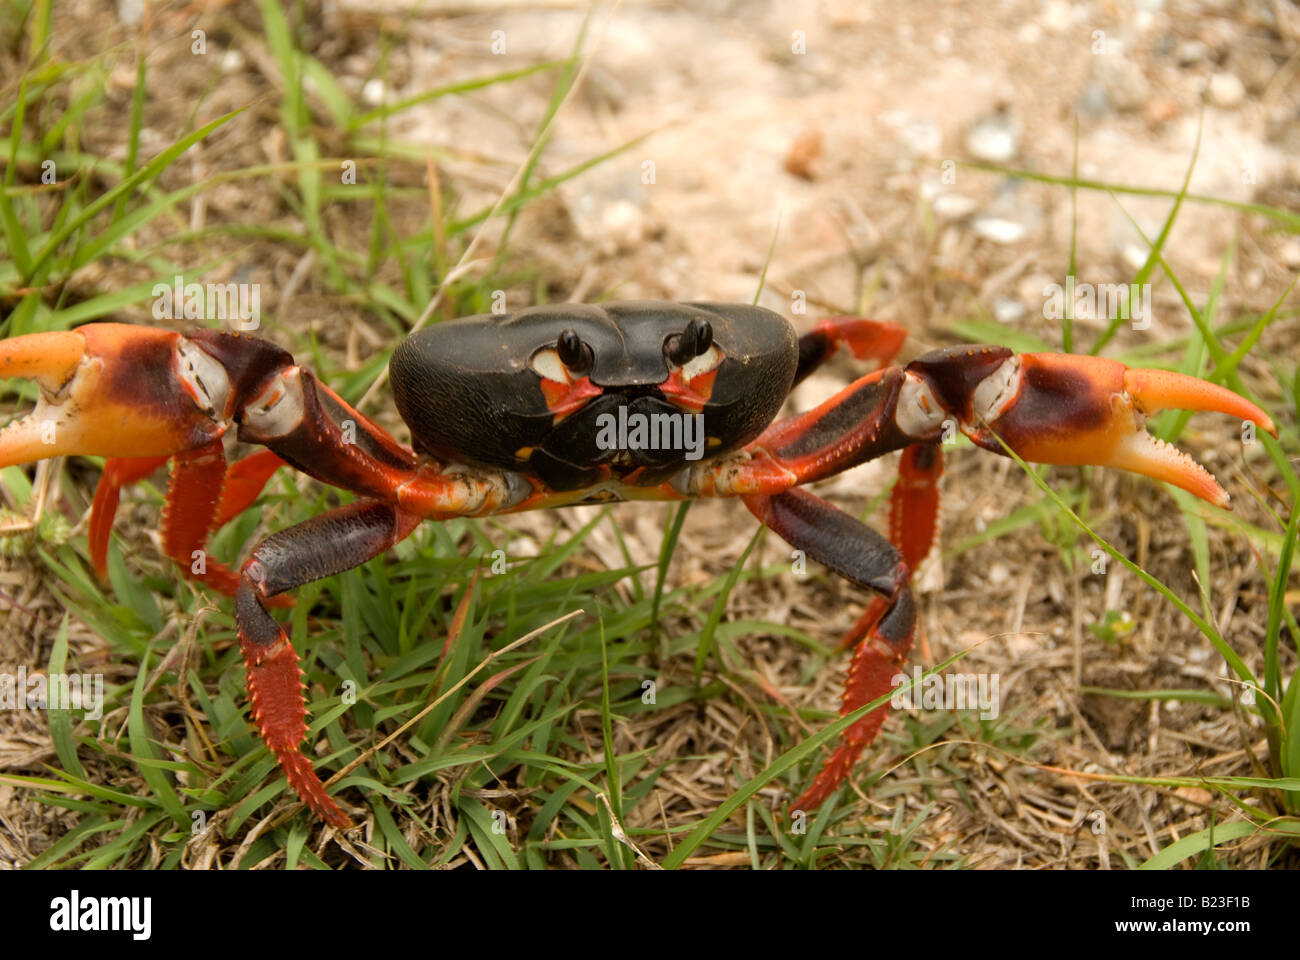 Gecarcinus ruricola – land crab, Cuba Stock Photo